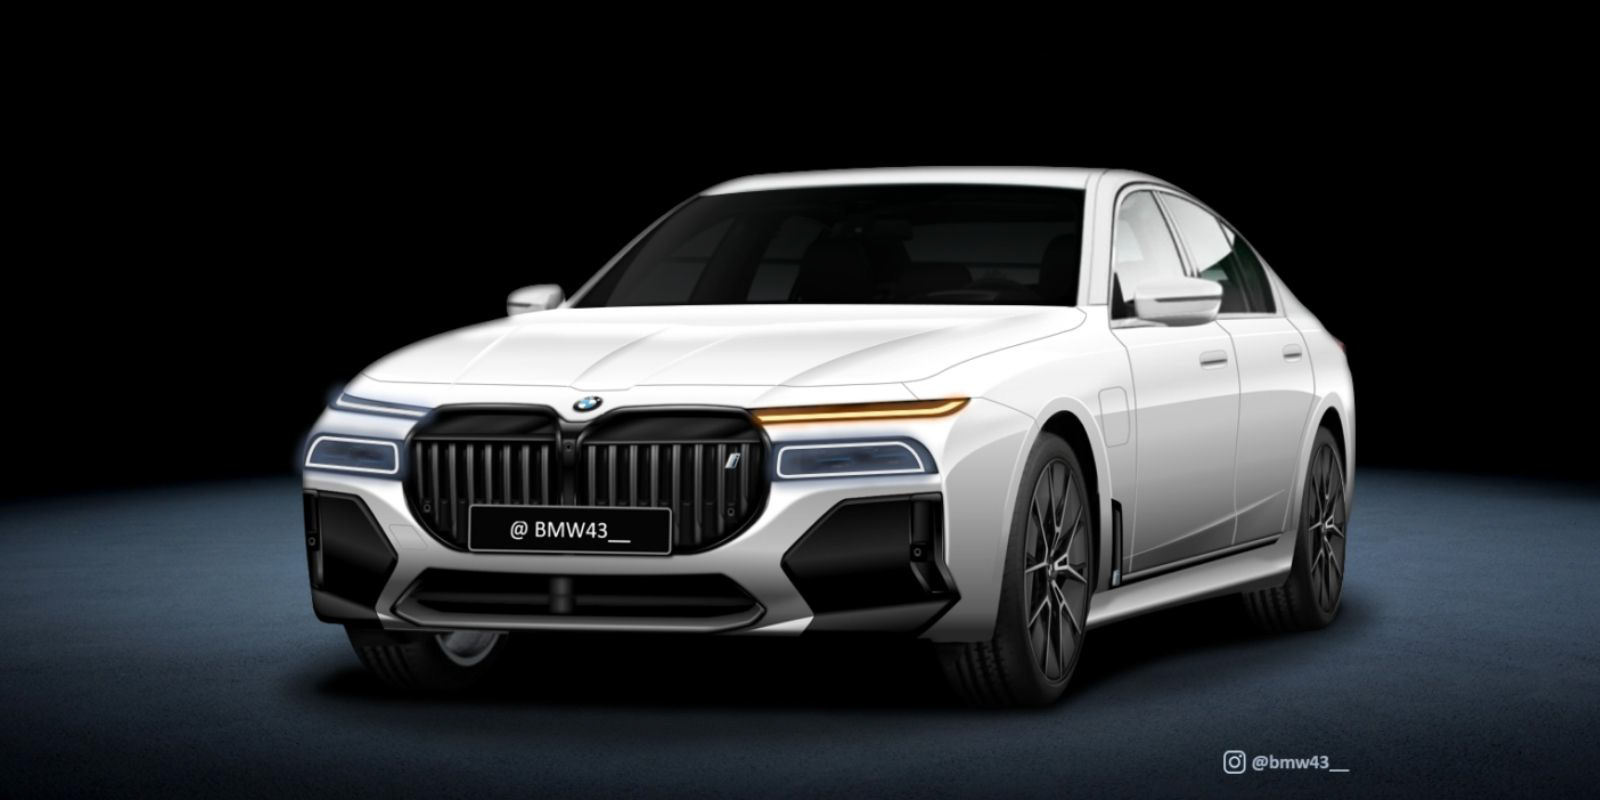 NextGen BMW 7 Series Rendered With Futuristic Design